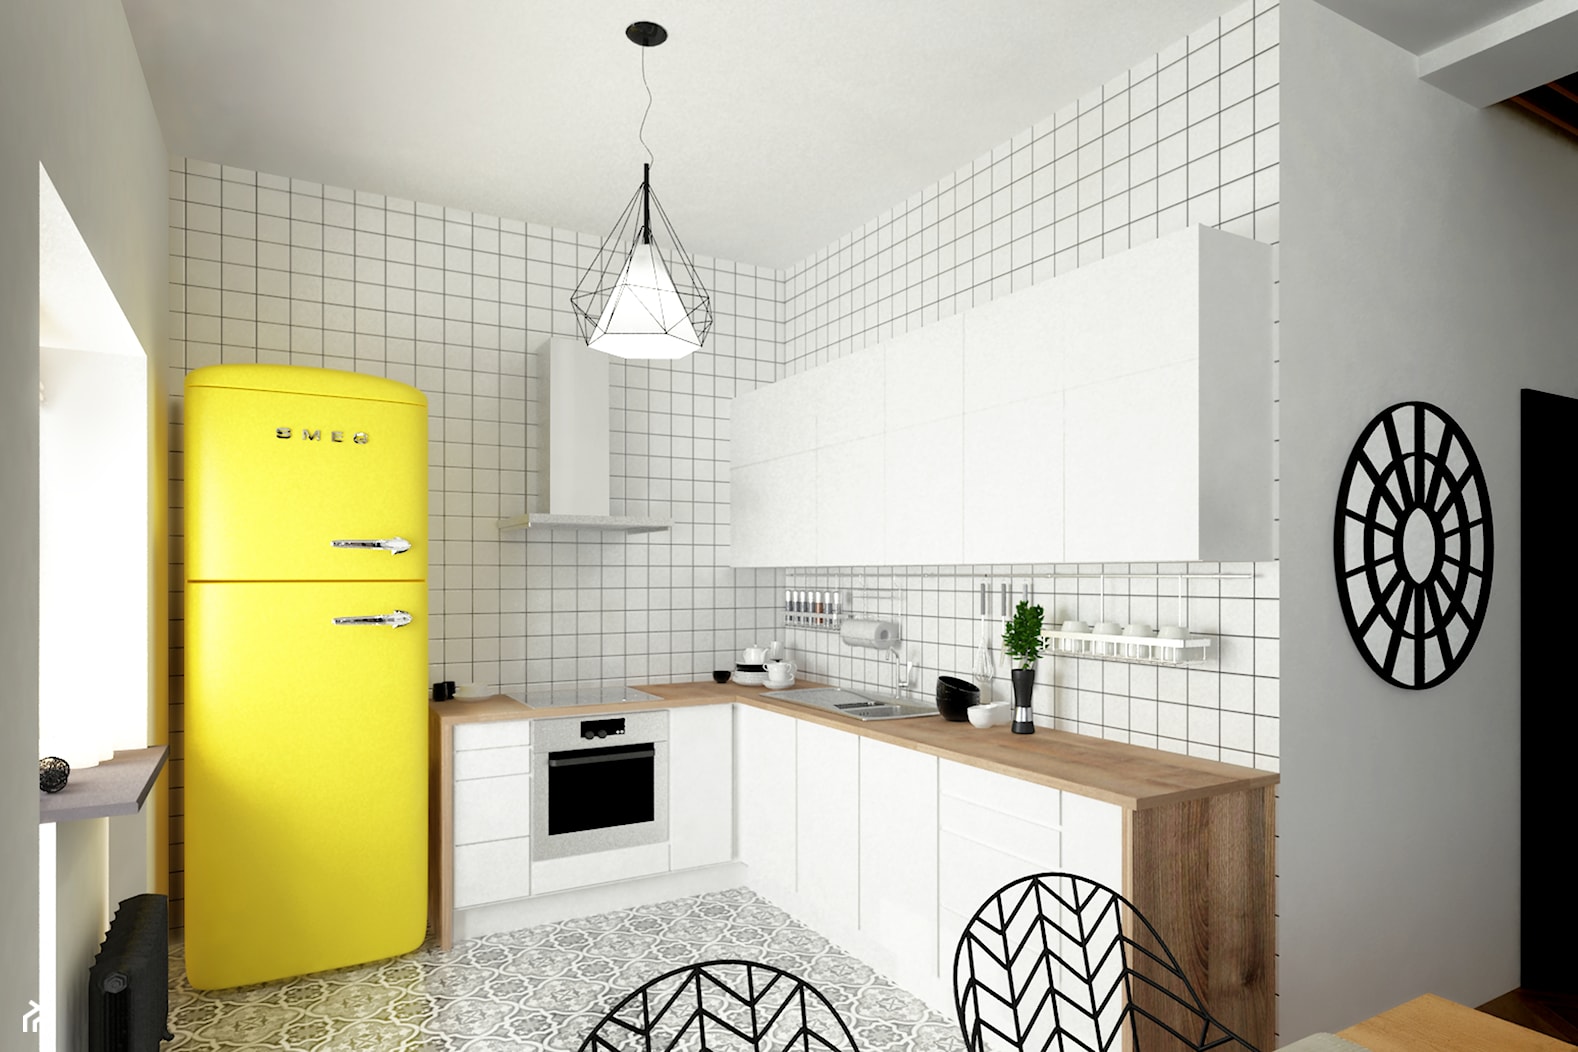 Kuchnia w skandynawskim stylu, biała płytka, żółty kolor akcentowy - zdjęcie od Alina Shevchenko Interiors - Homebook